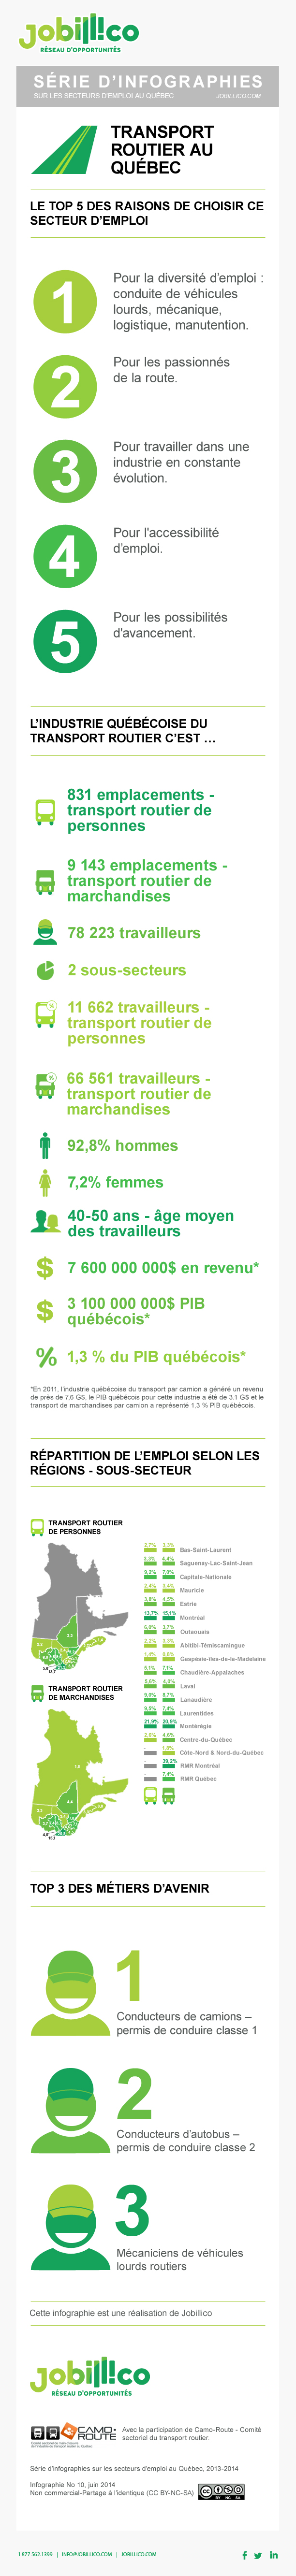 infographie représentant les chiffres de l'emploi du secteur du transport routier au Québec